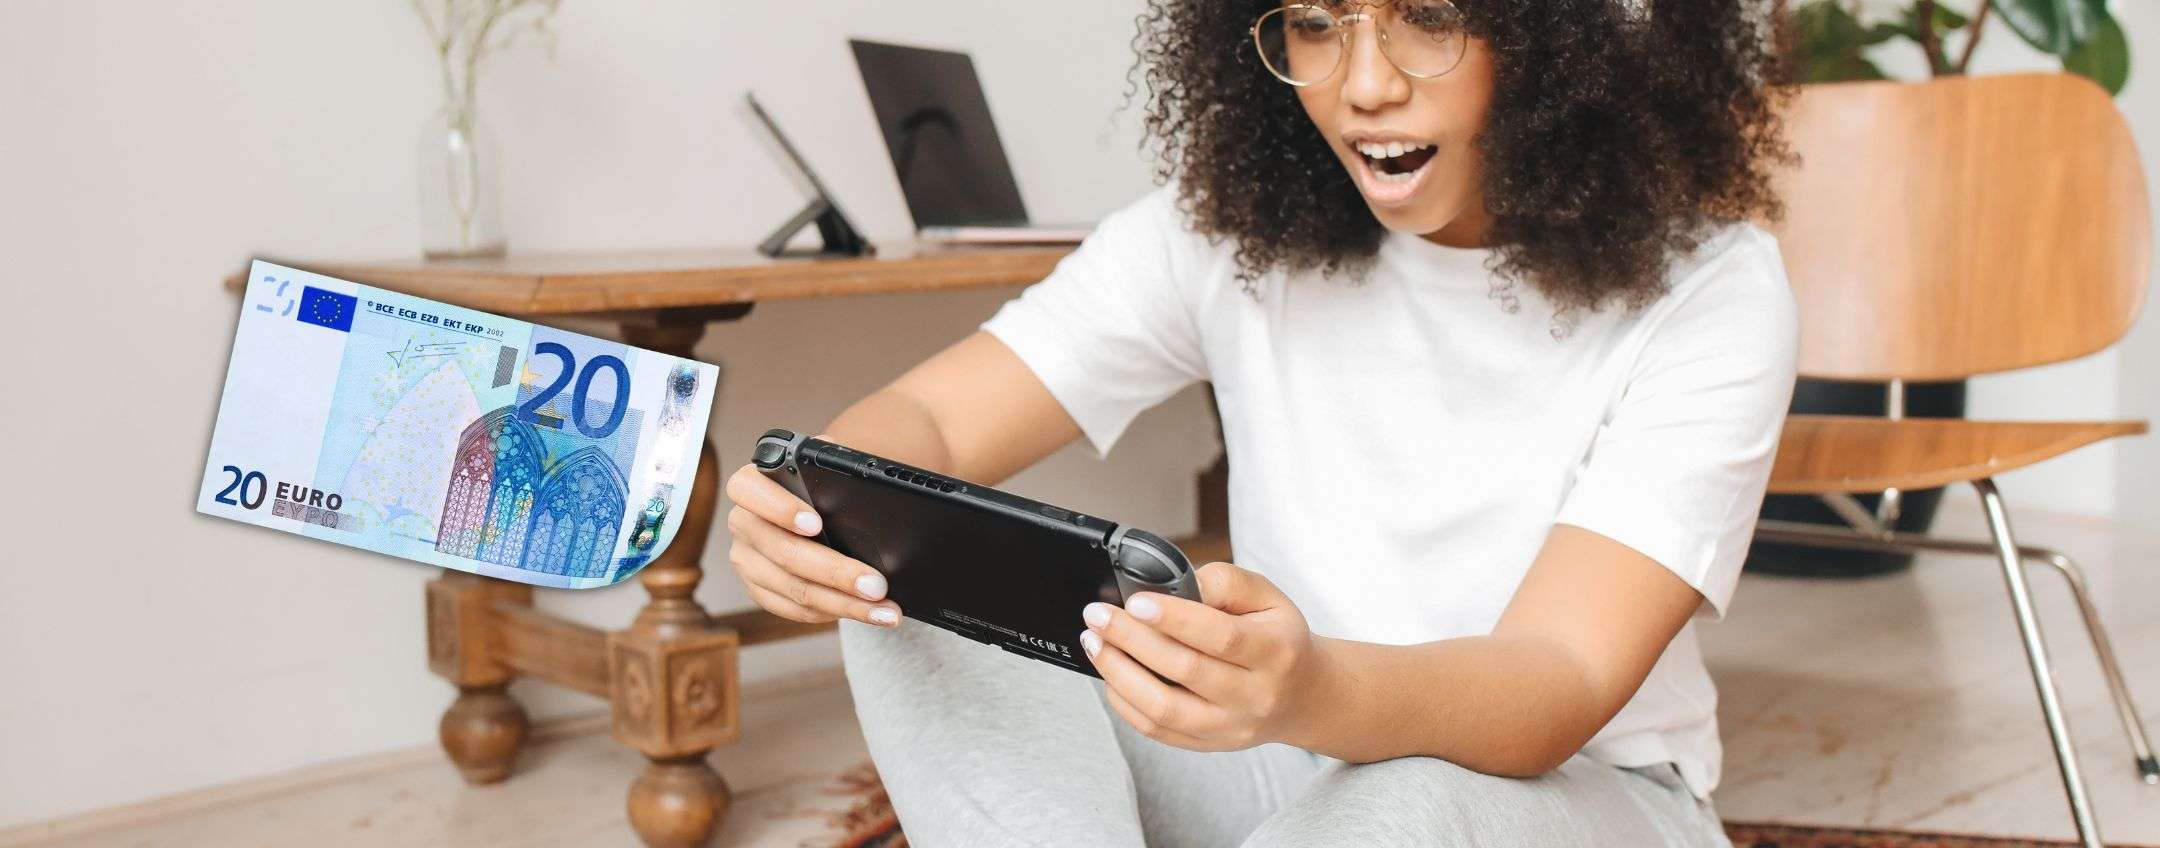 Giochi Nintendo Switch in offerta a meno di 20 euro con le offerte